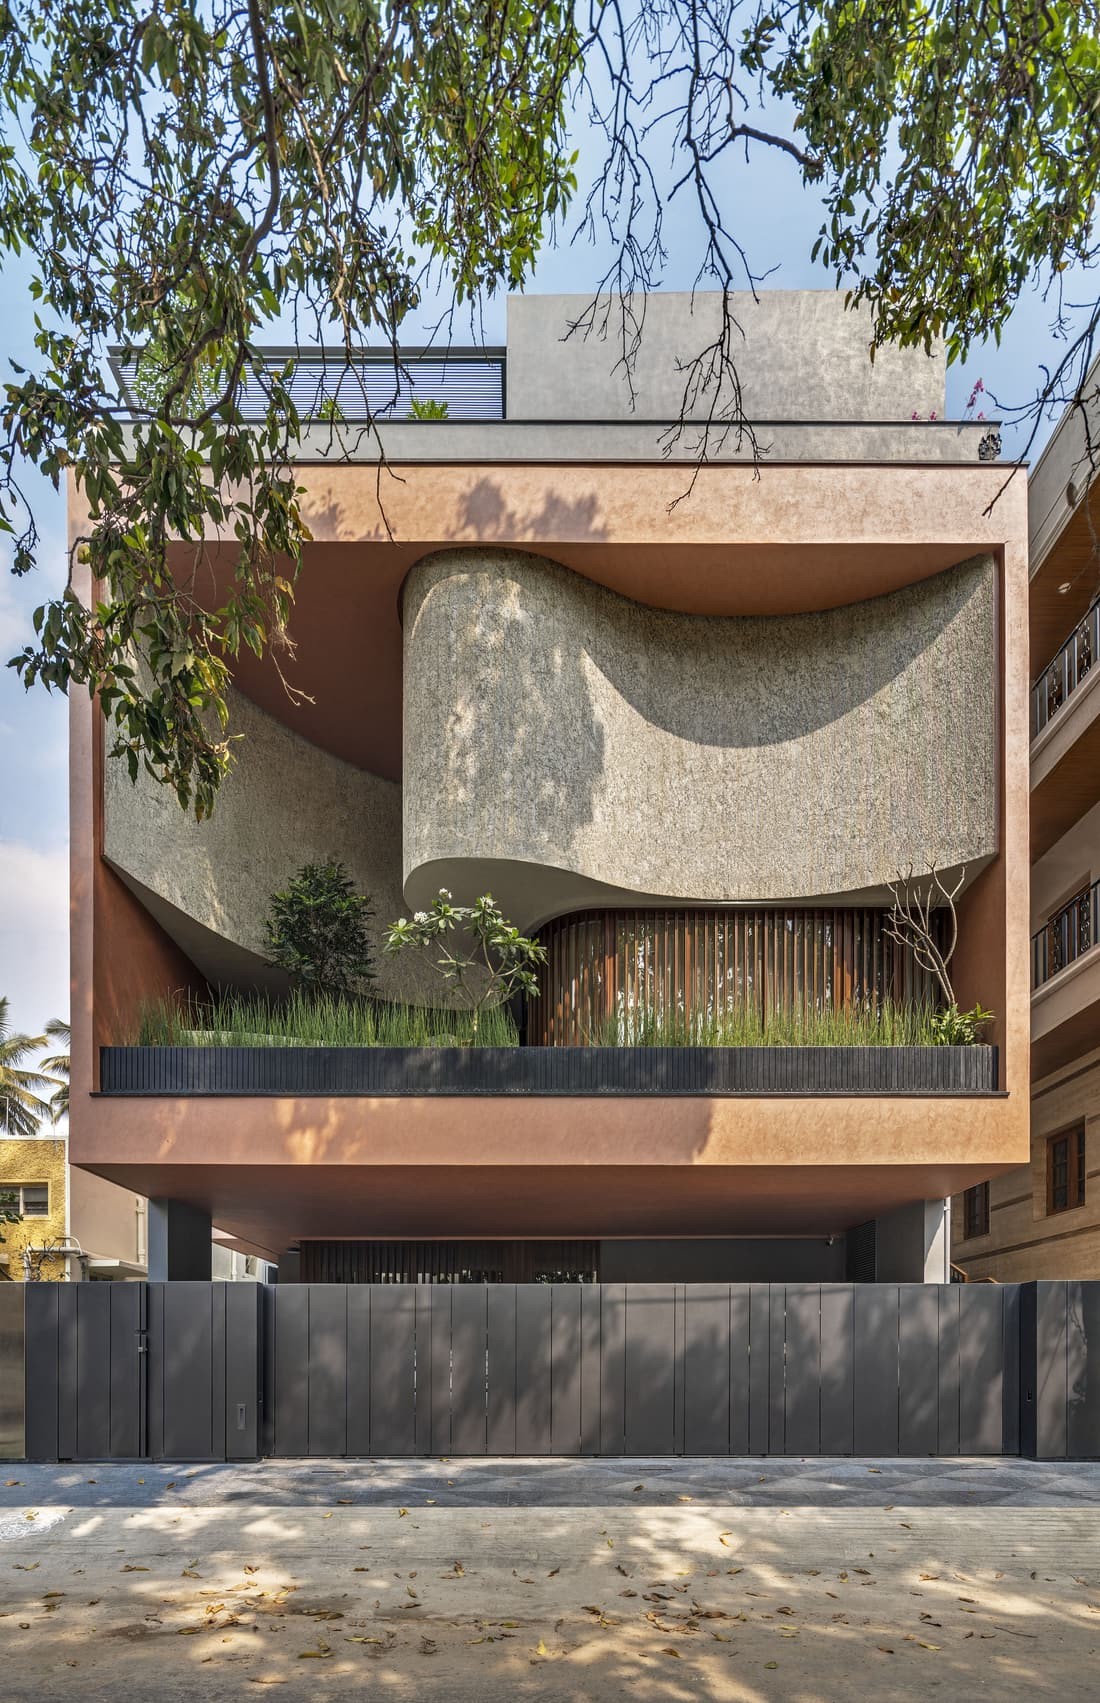 Badari House, Bengaluru / Cadence Architects